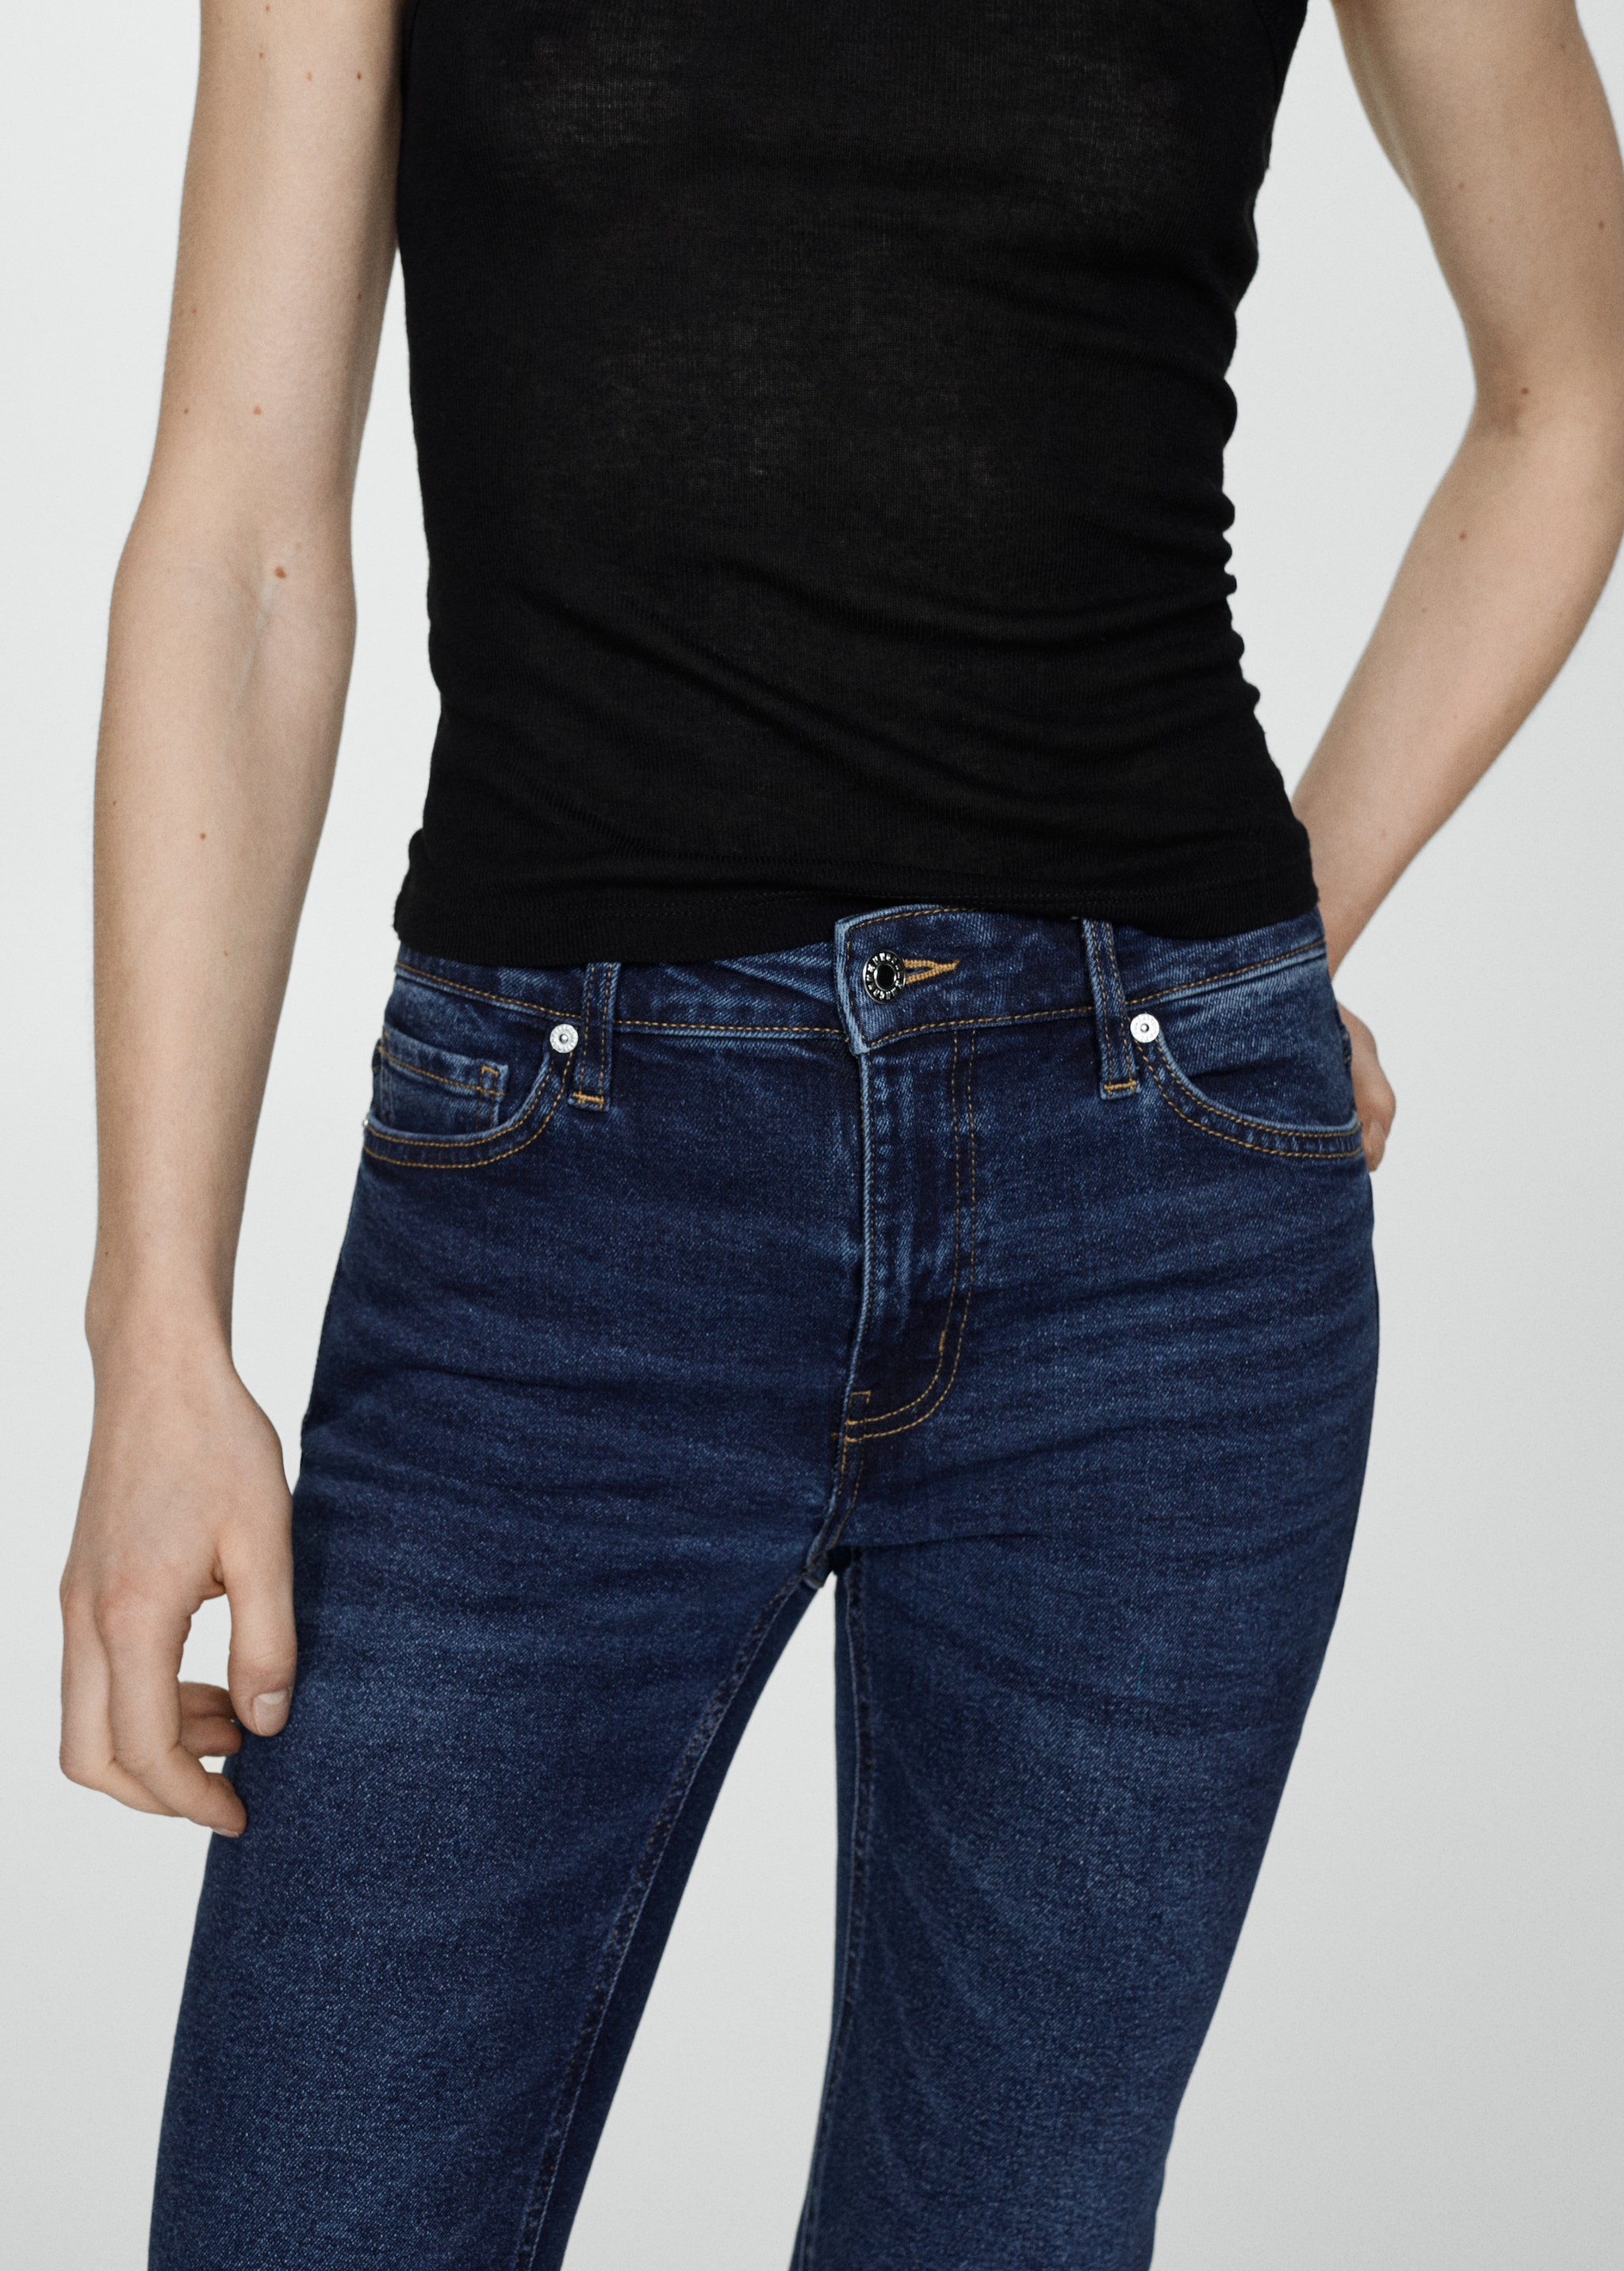 Укороченные джинсы flare - Деталь изделия 6